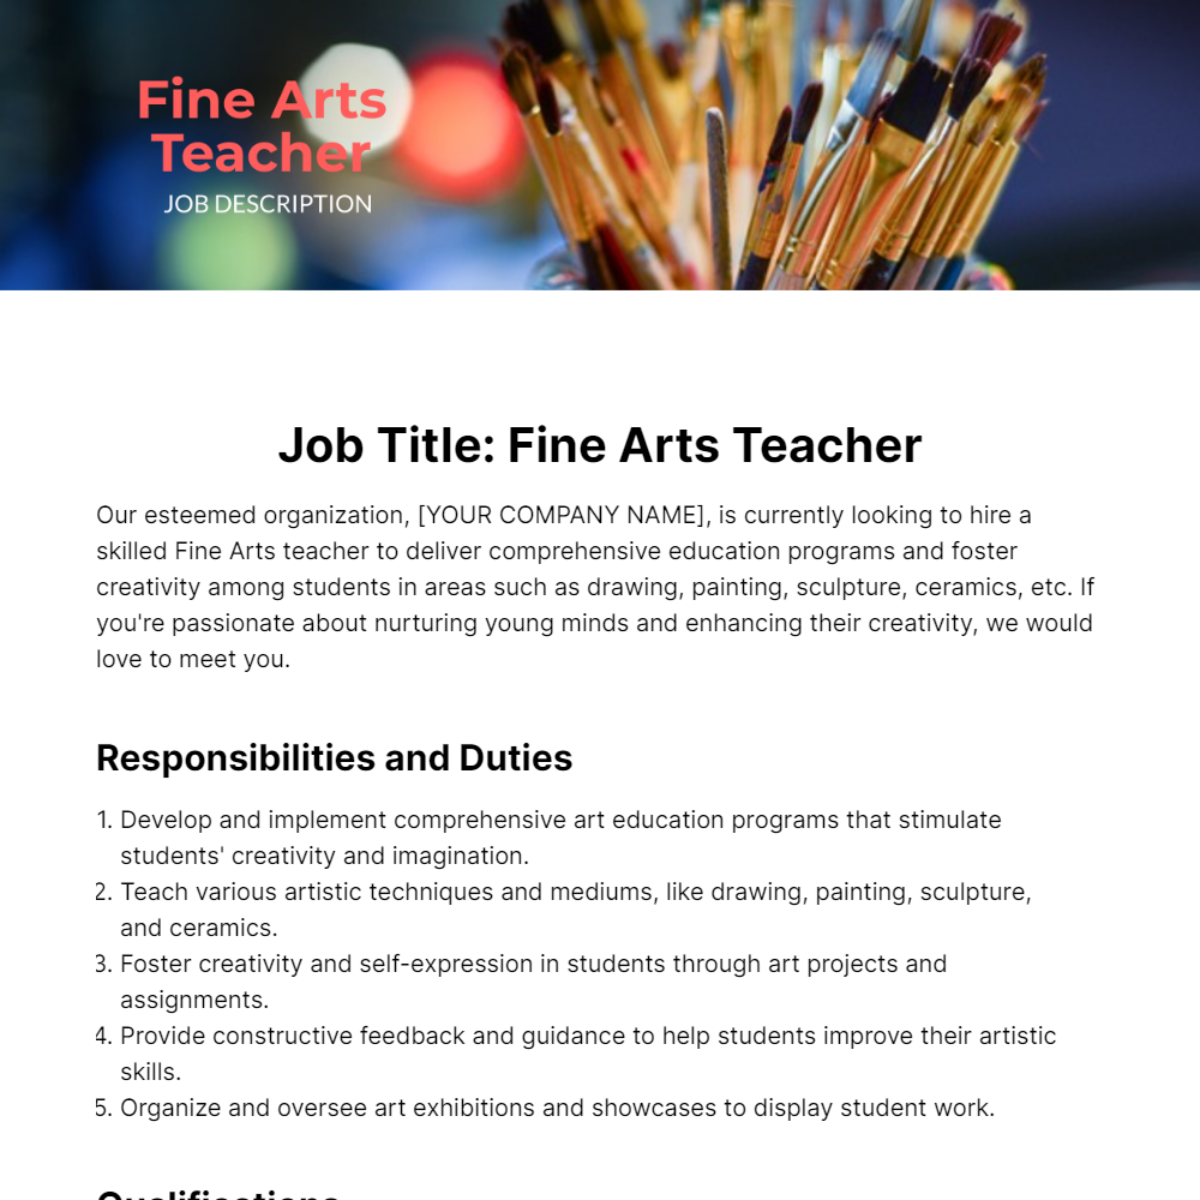 Fine Arts Teacher Job Description Template